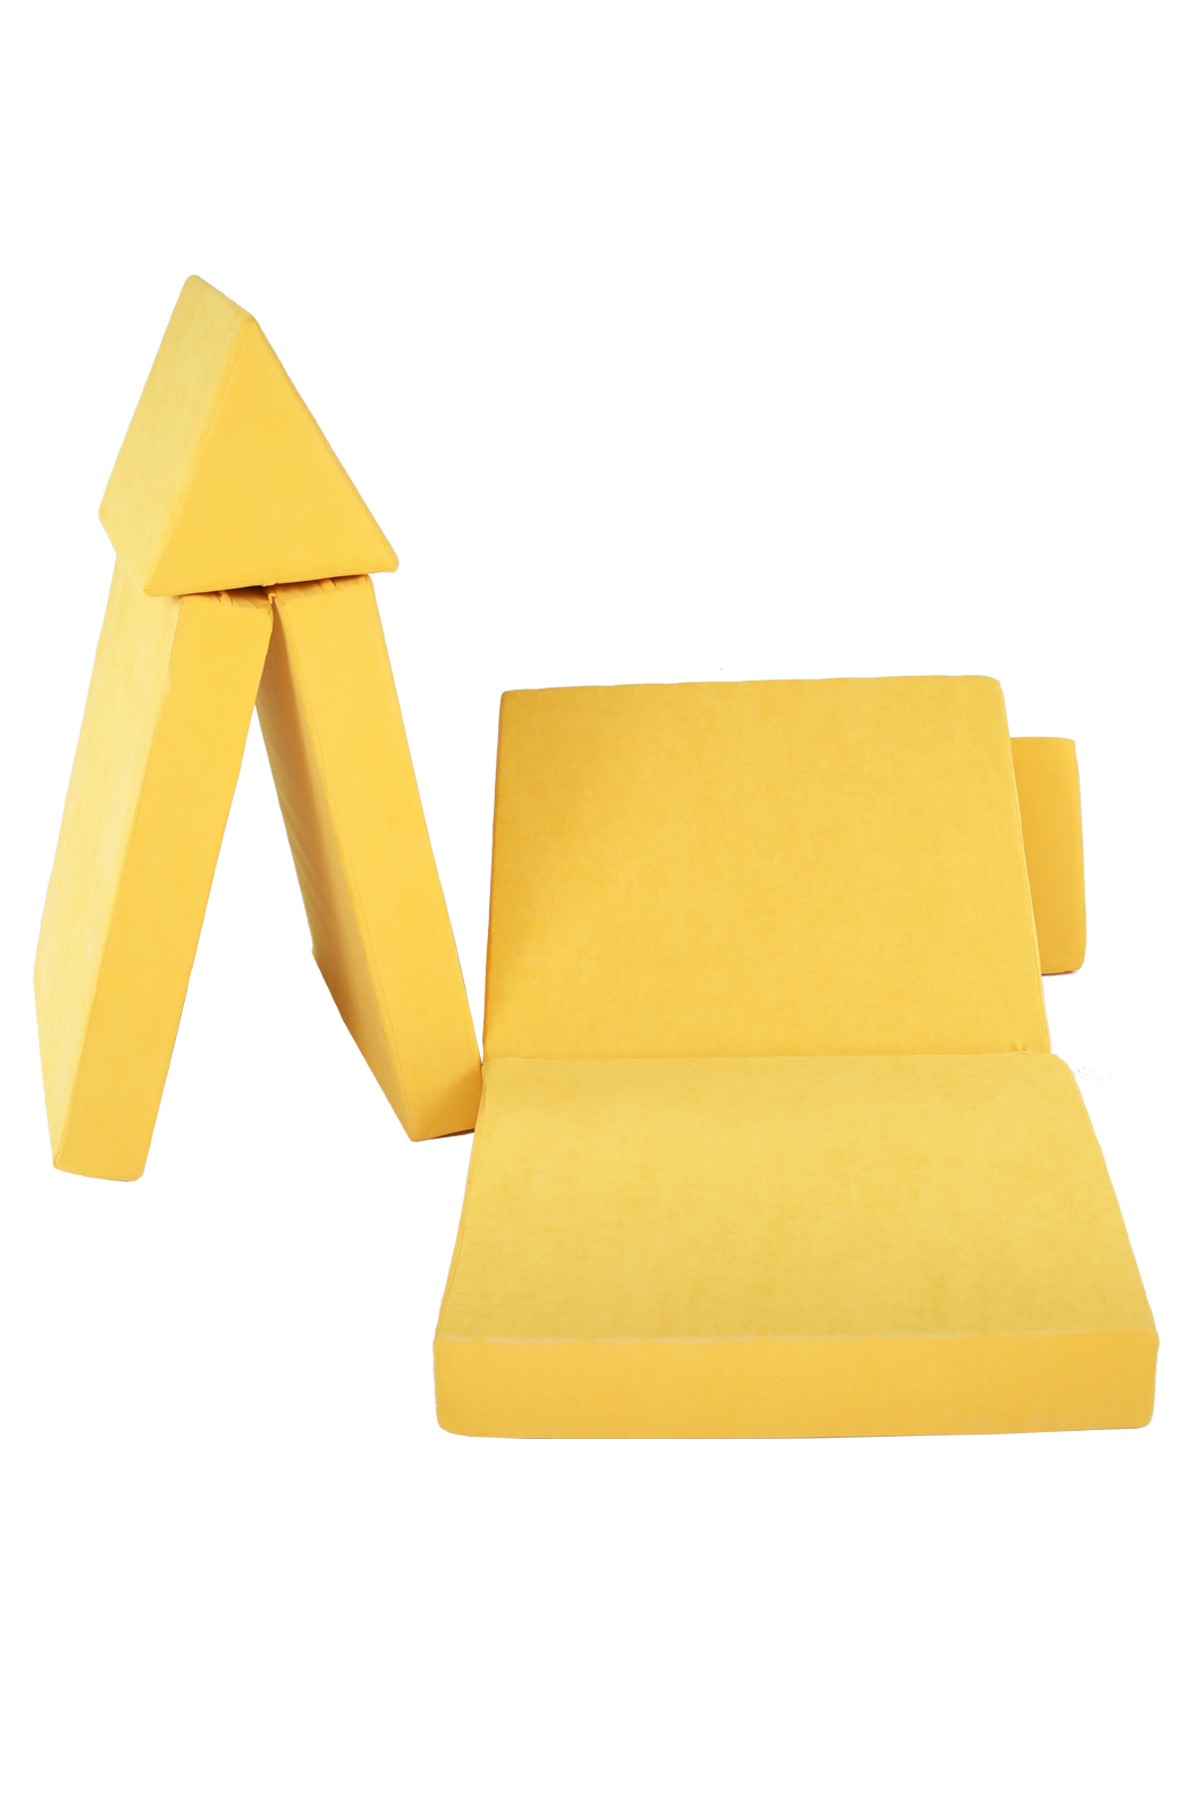 6 Pieces Yellow Puzzle Sponge